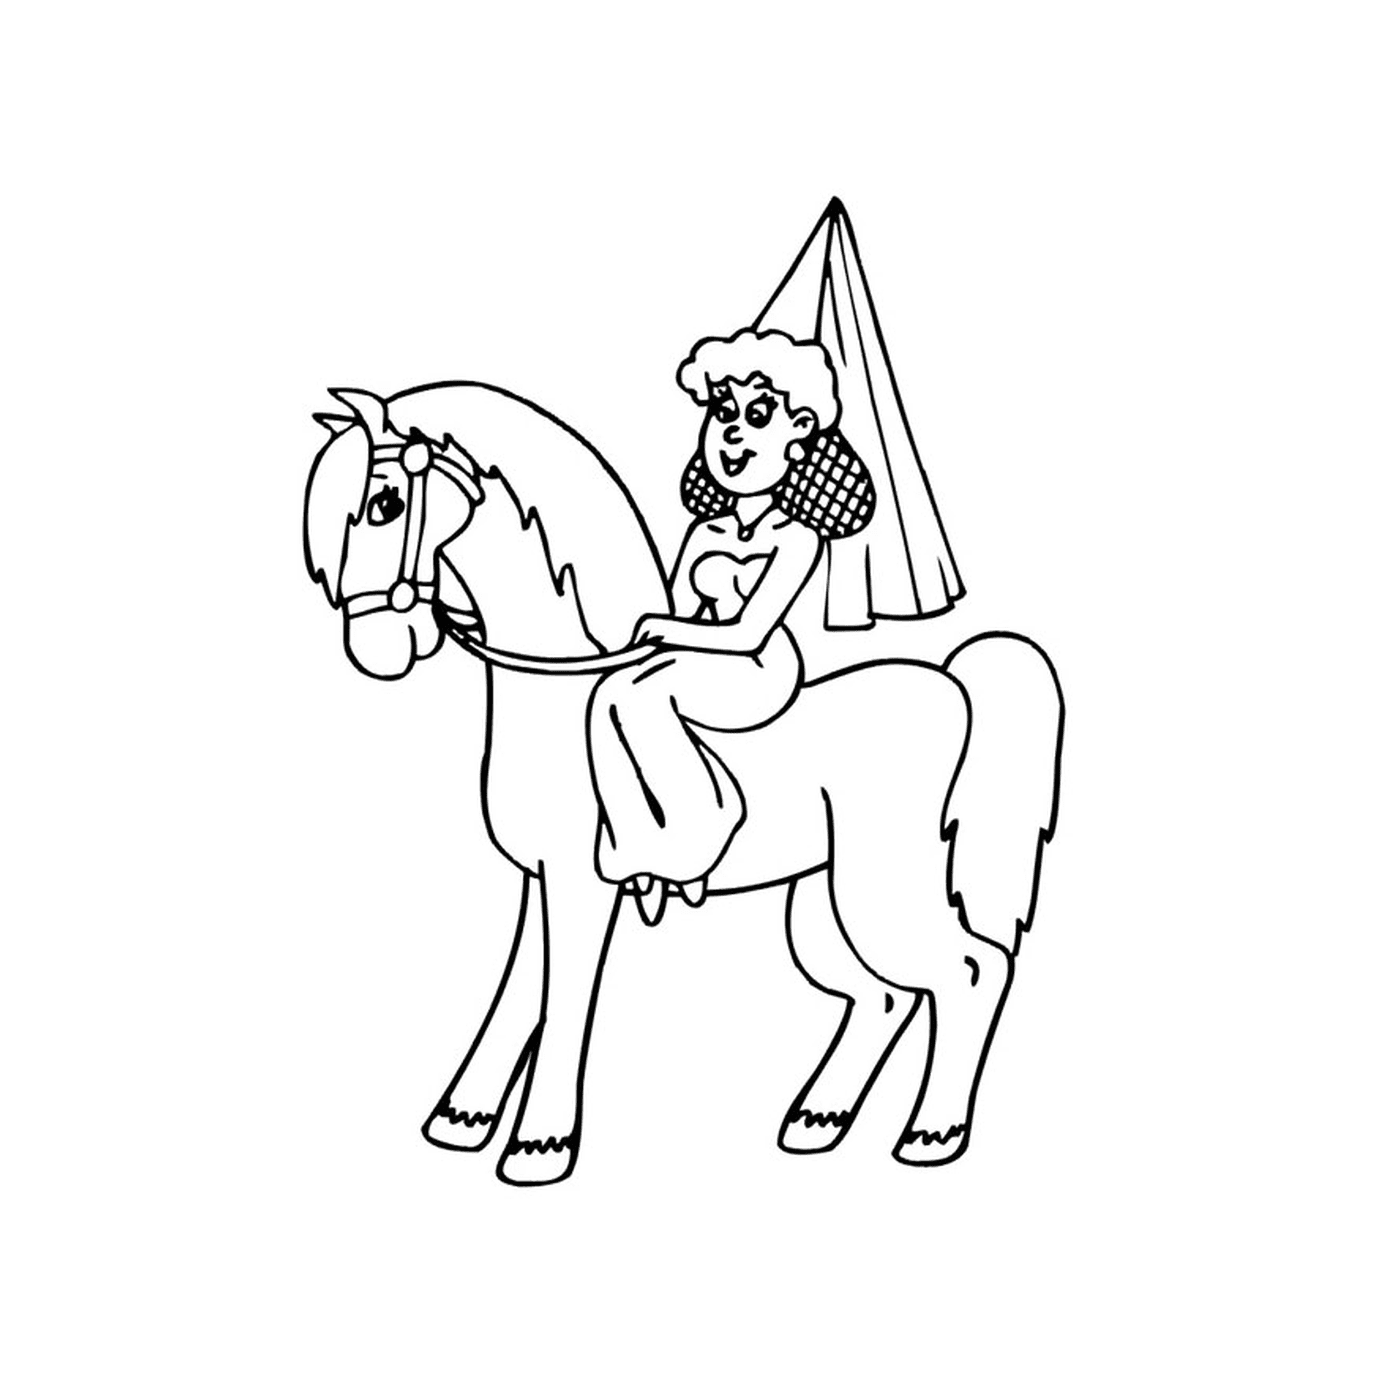  Persona sentada en un caballo princesa 